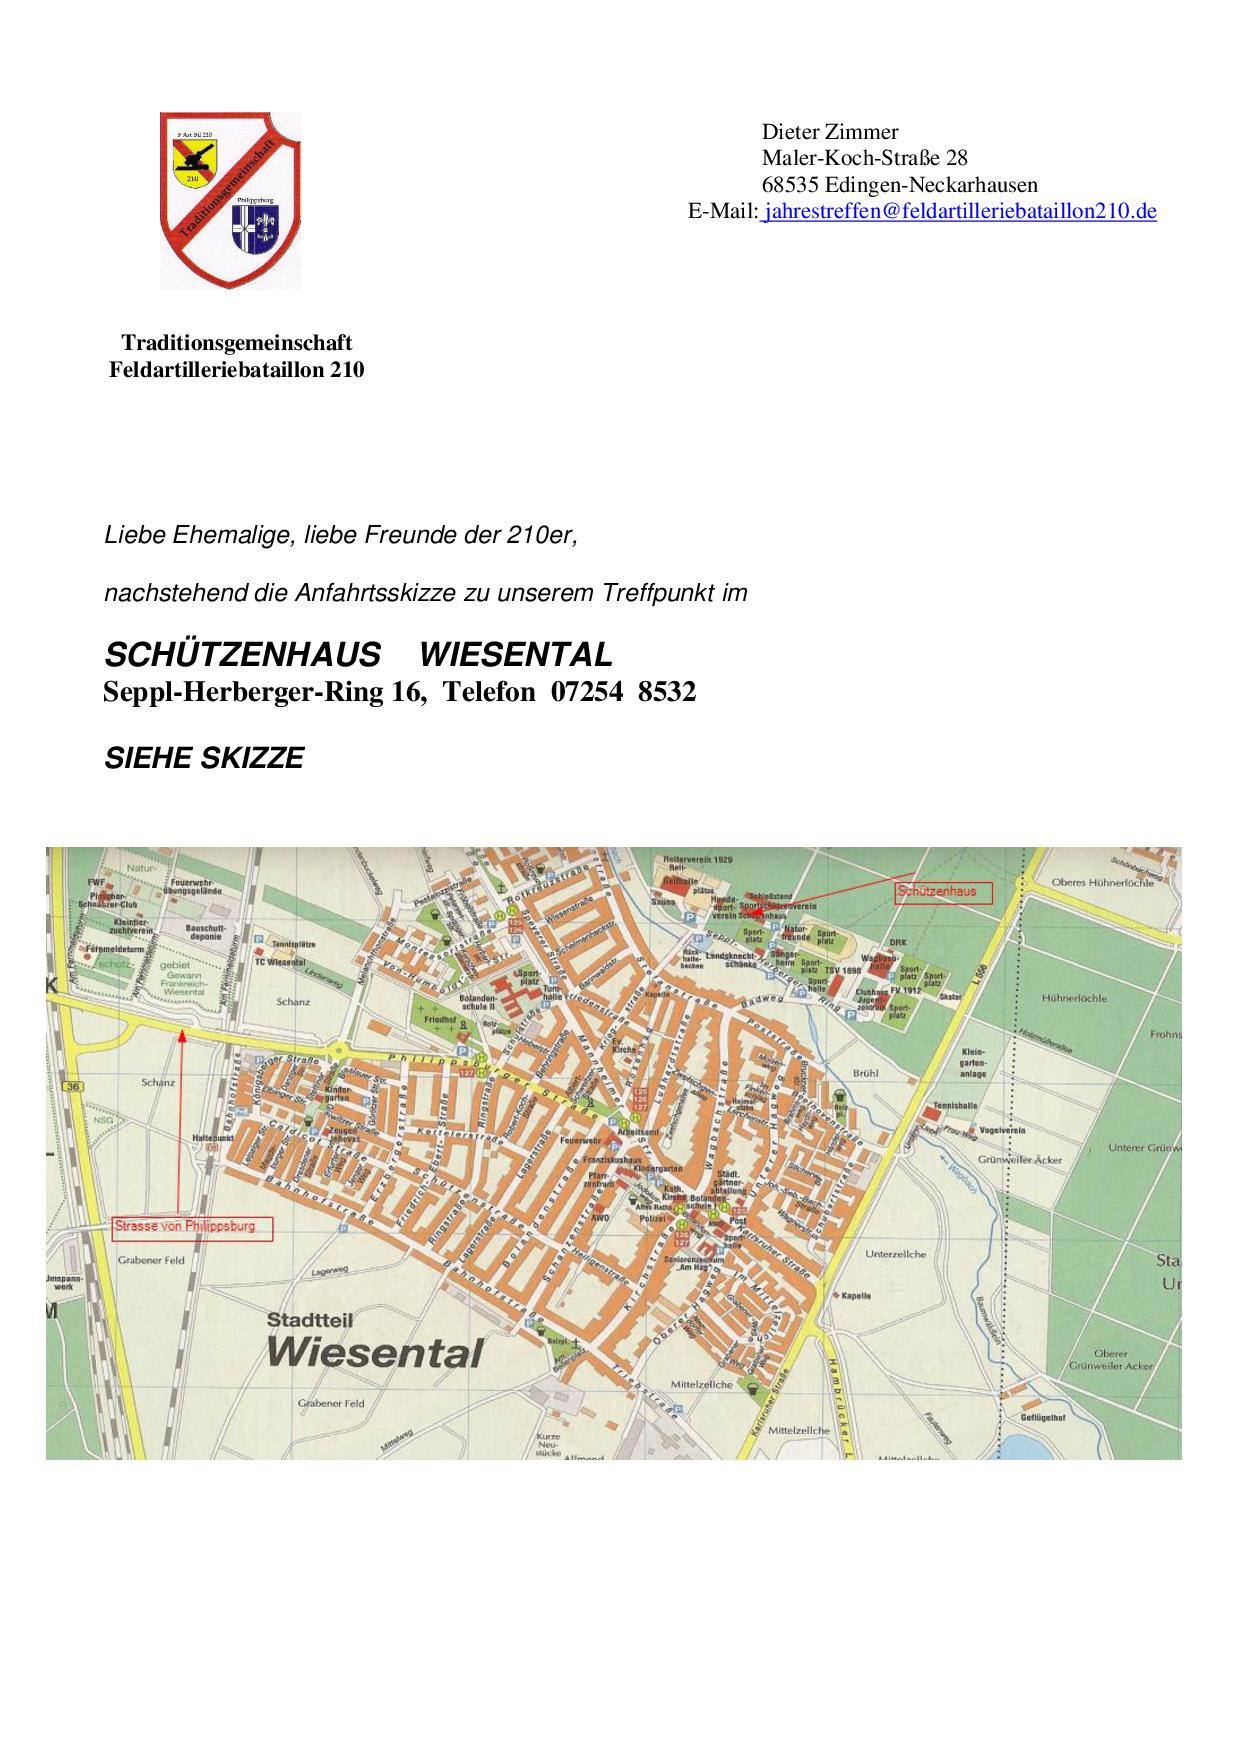 Einladungsschreiben Skizze Schtzenhaus Wiesental 2015 ohne Datum-001